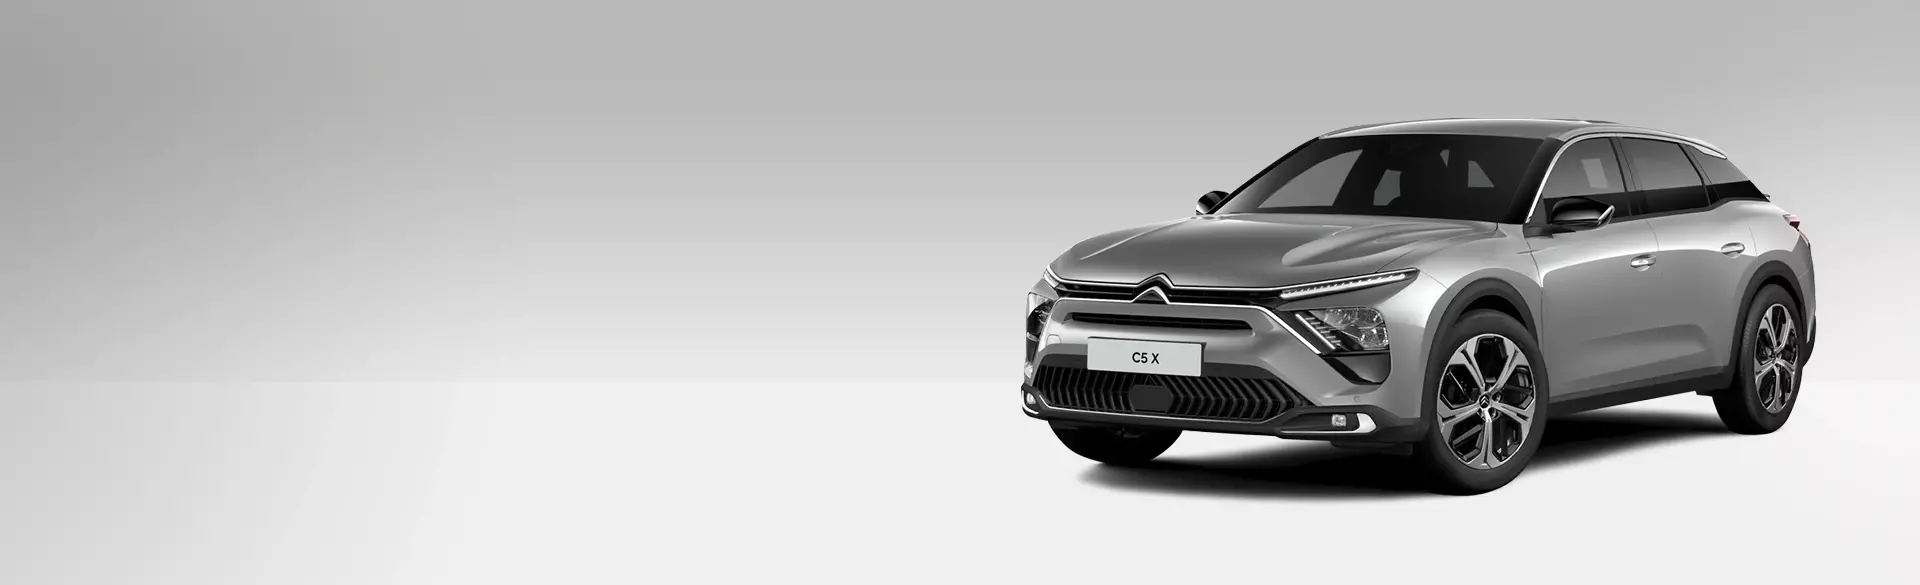 Citroën C5 X You